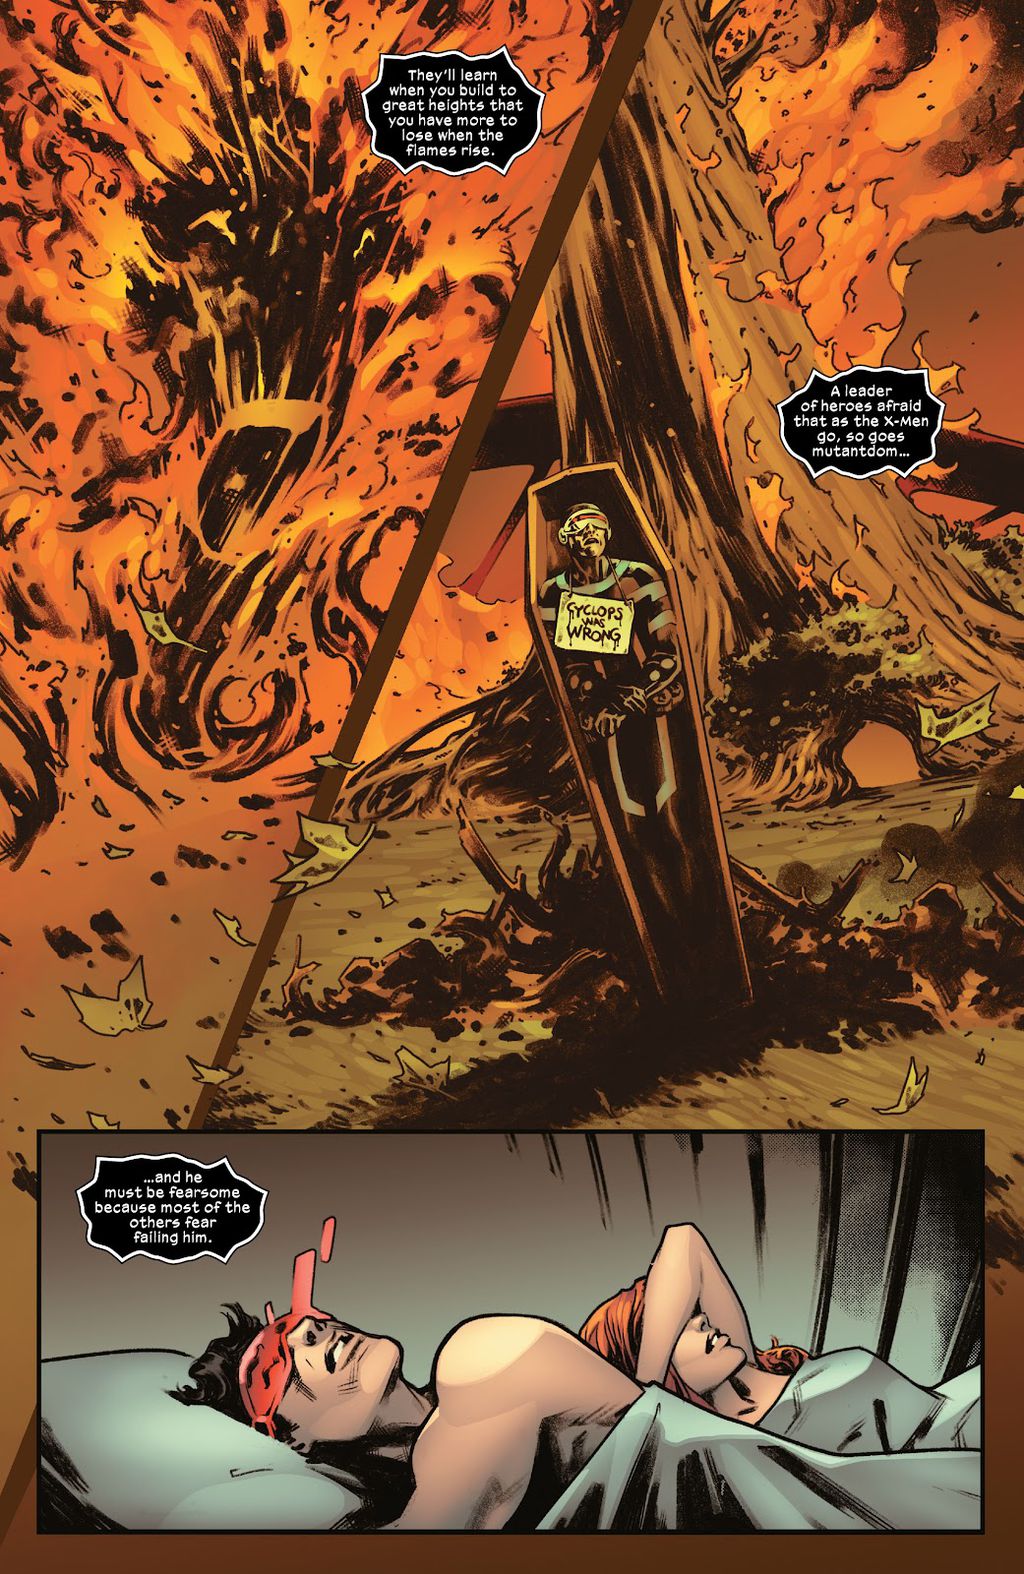 Cena de X-Men nº 4 mostra sonho com Ciclope morto e mensagem misteriosa (Imagem: Reprodução/Marvel)